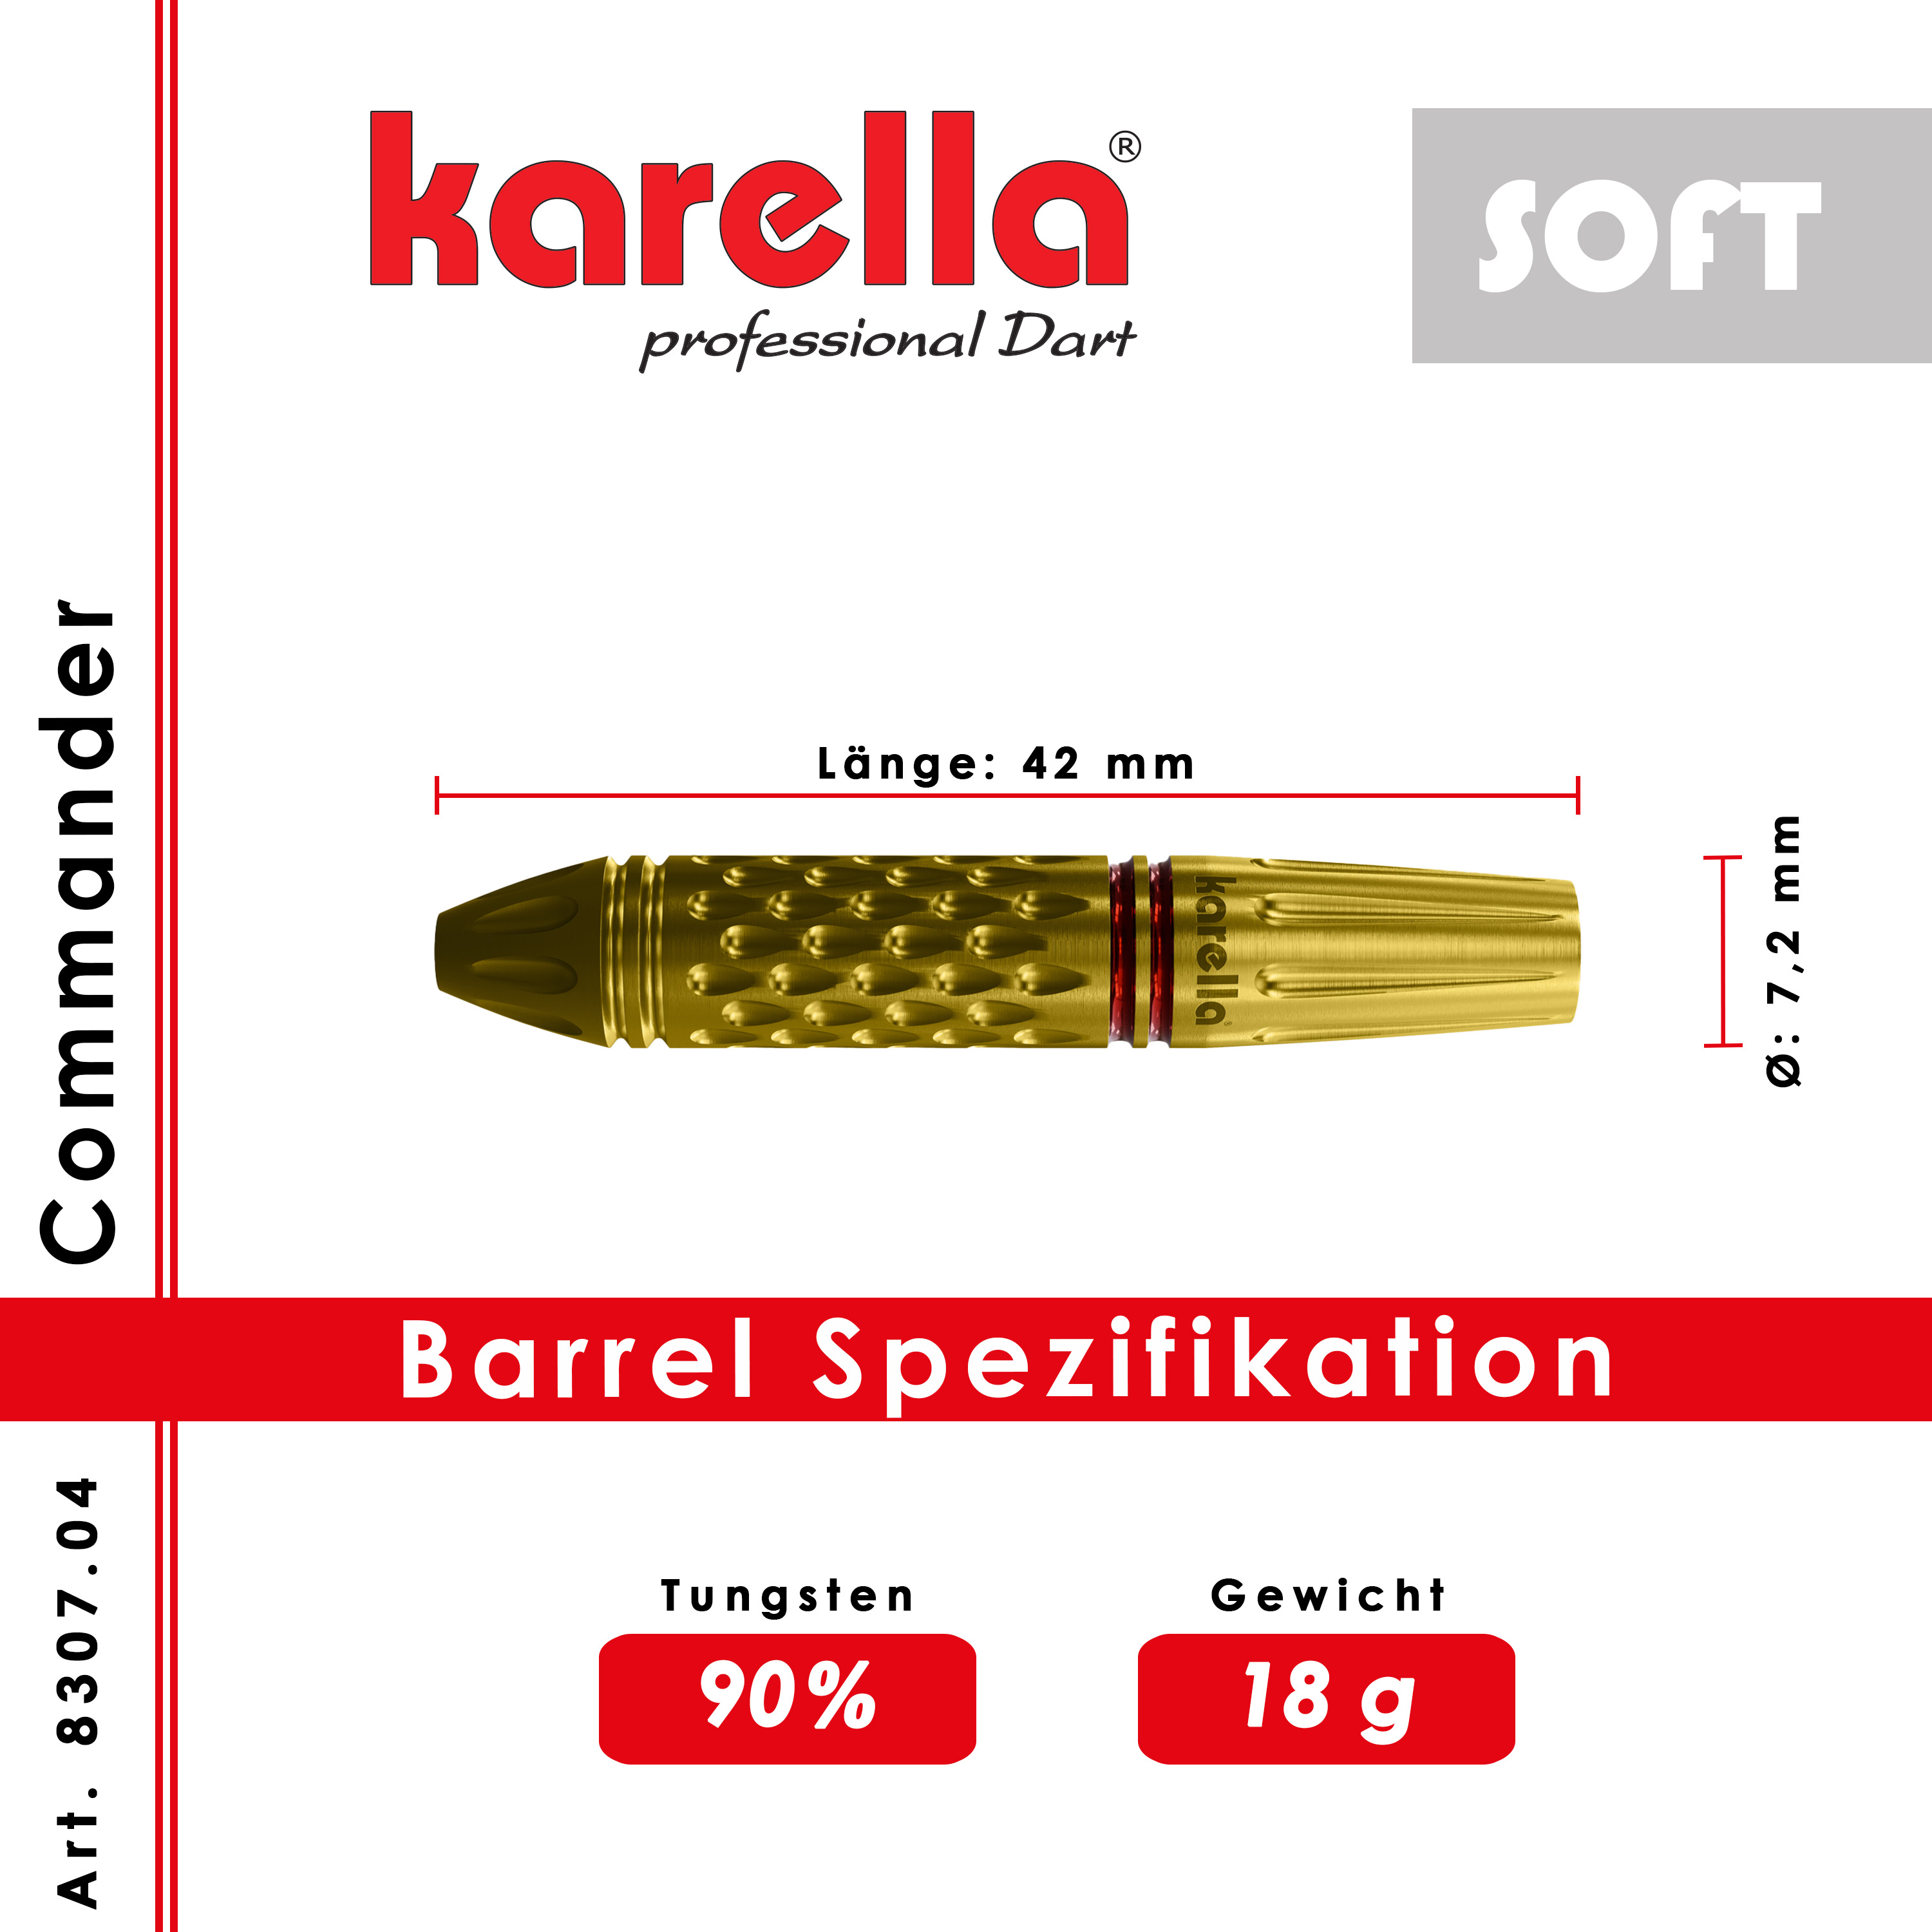 Softdart Karella Commander Gold 90% Tungsten 18 g oder 20 g